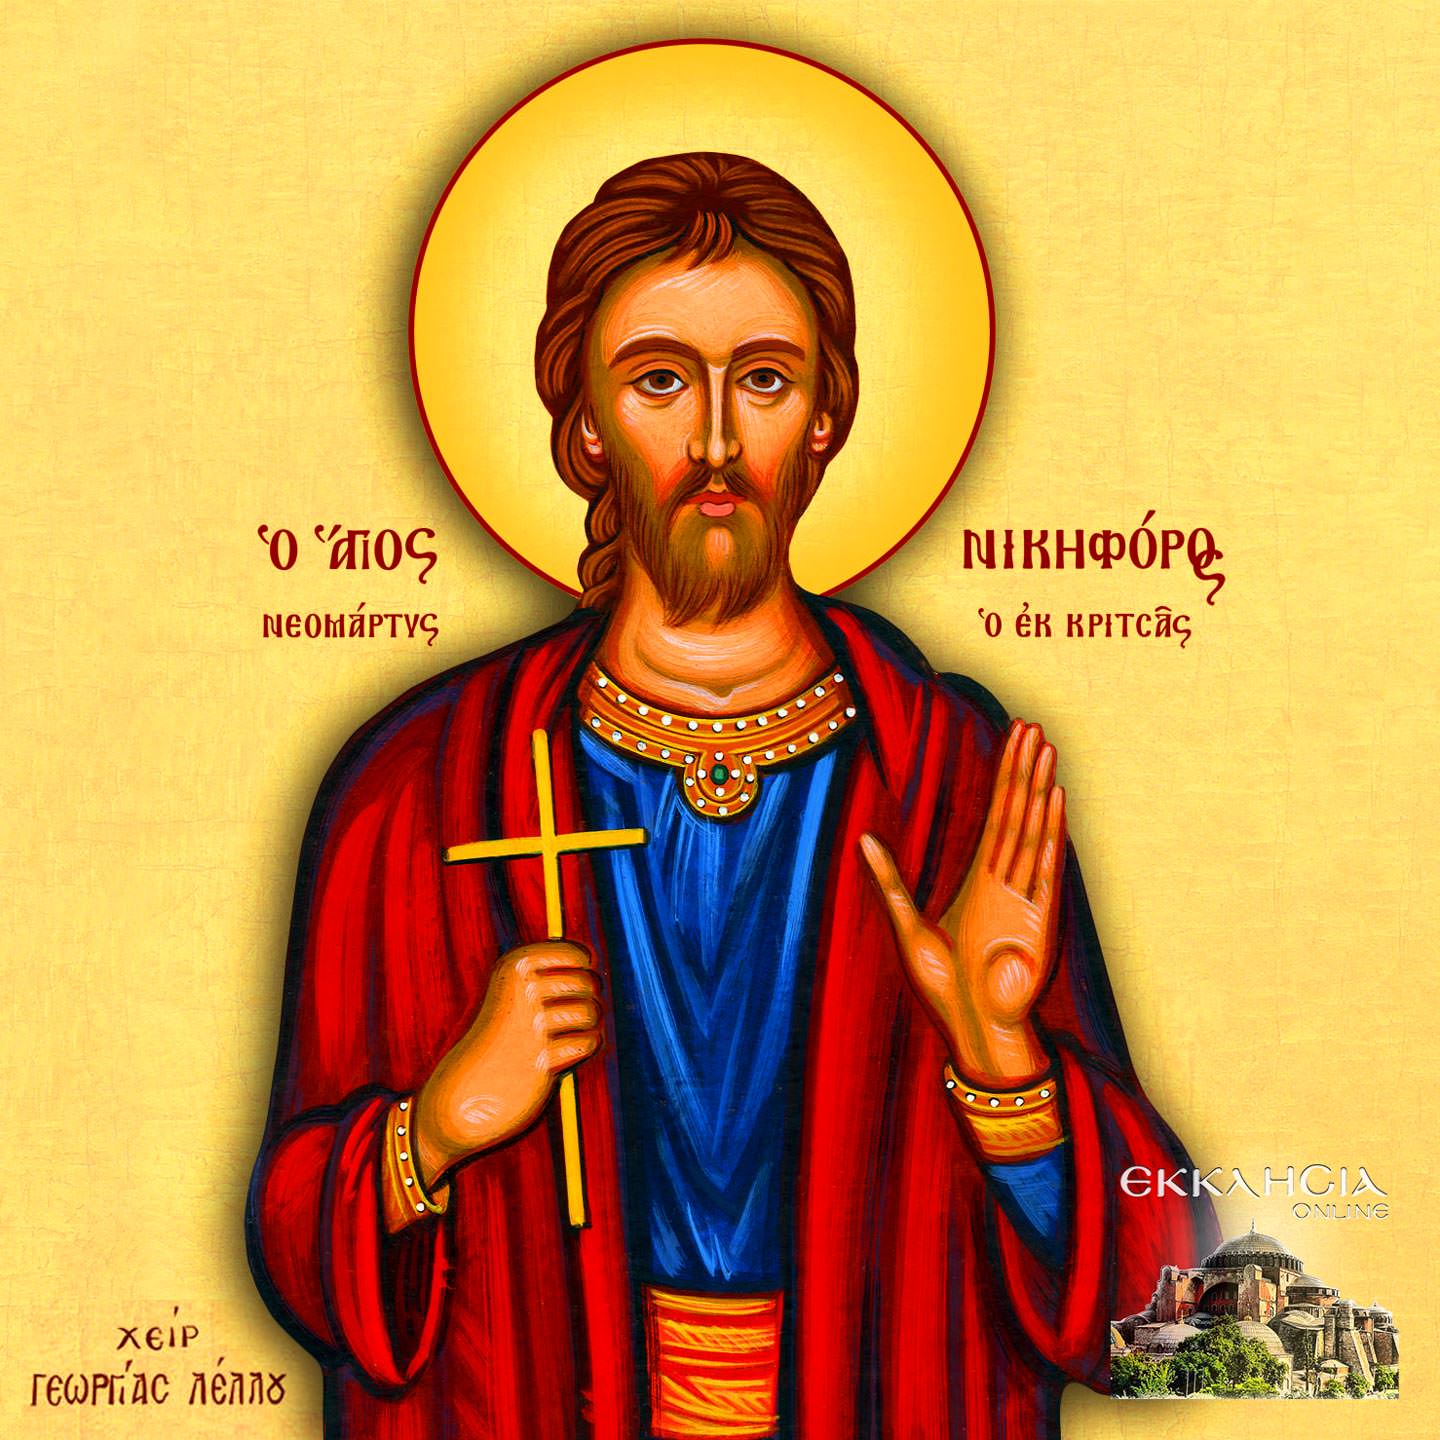 Άγιος Νικηφόρος ο Νεομάρτυρας εκ Κρήτης 11 Ιανουαρίου